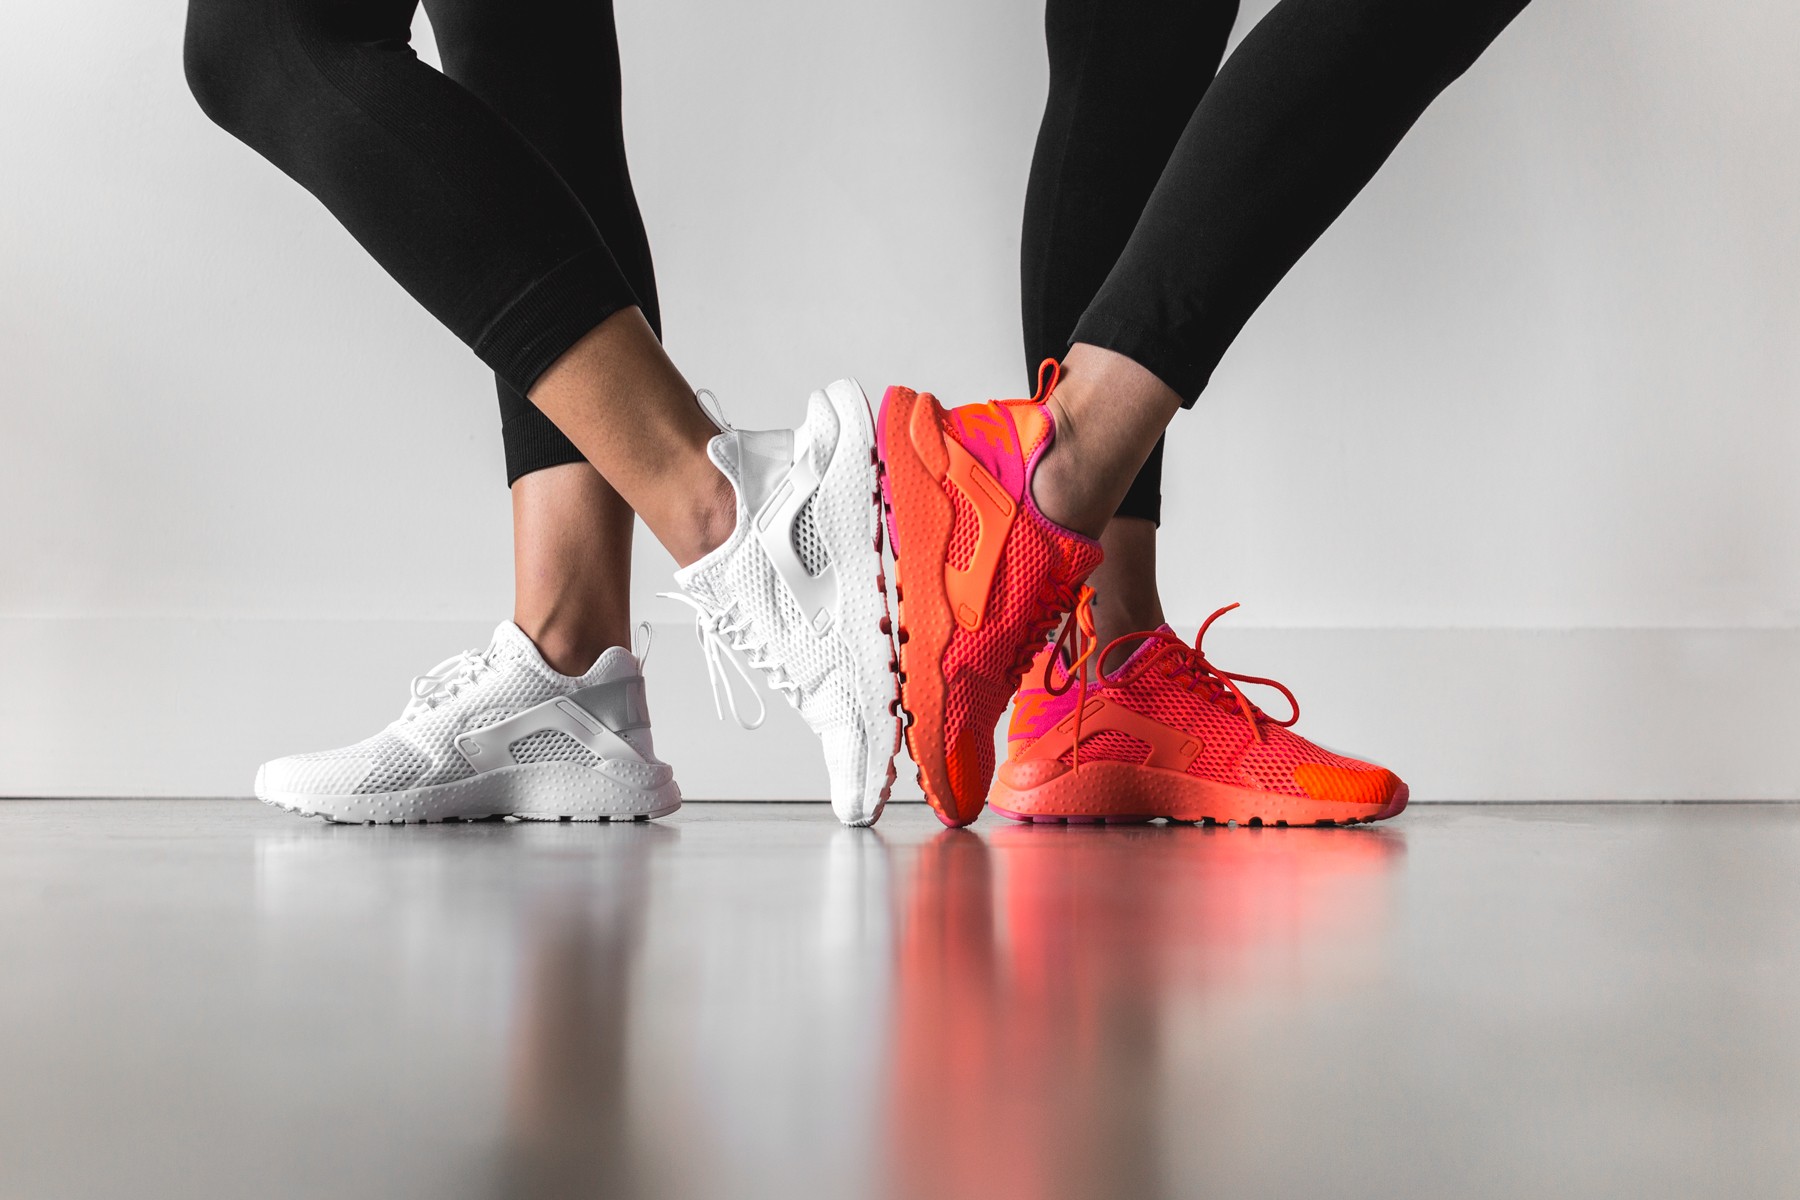 Nike 释出全新 Air Huarache Run Ultra BR “White” & “Total Crimson” 配色